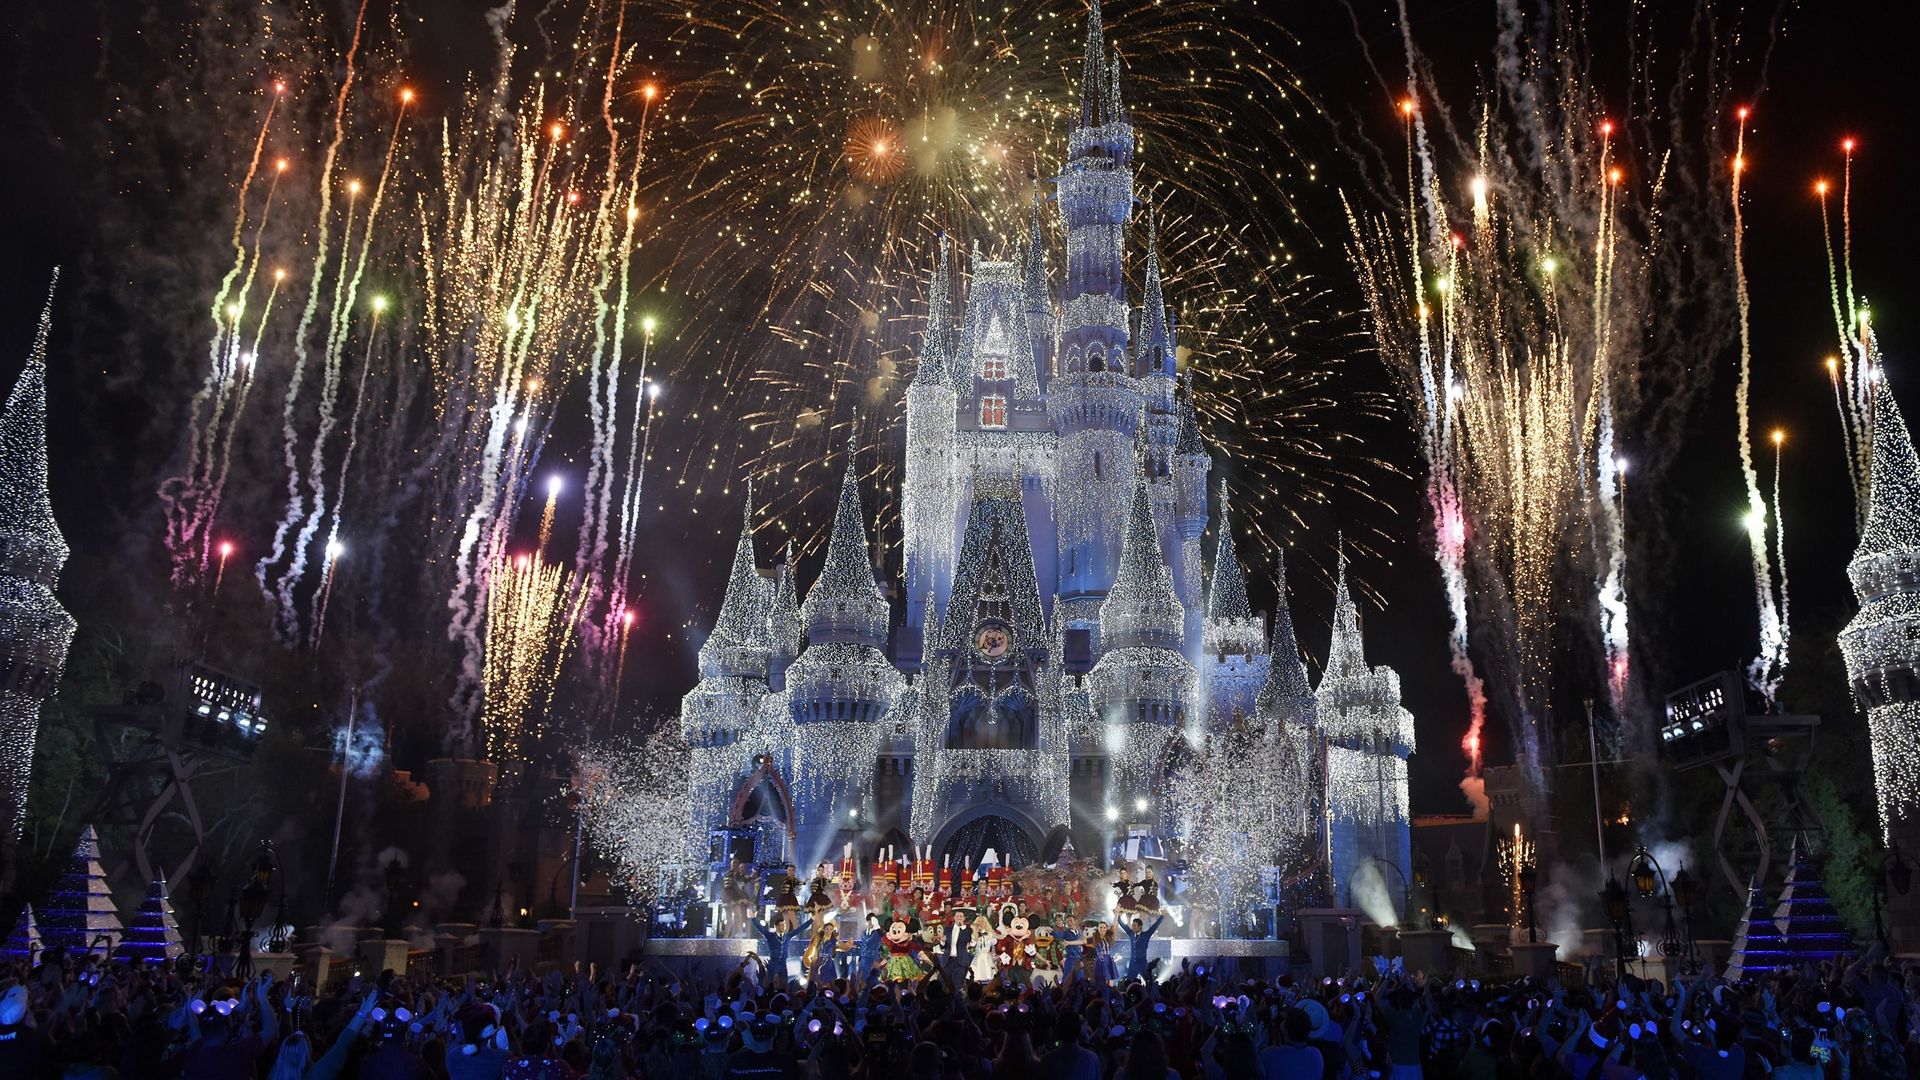 The Wonderful World of Disney Magical Holiday Celebration background